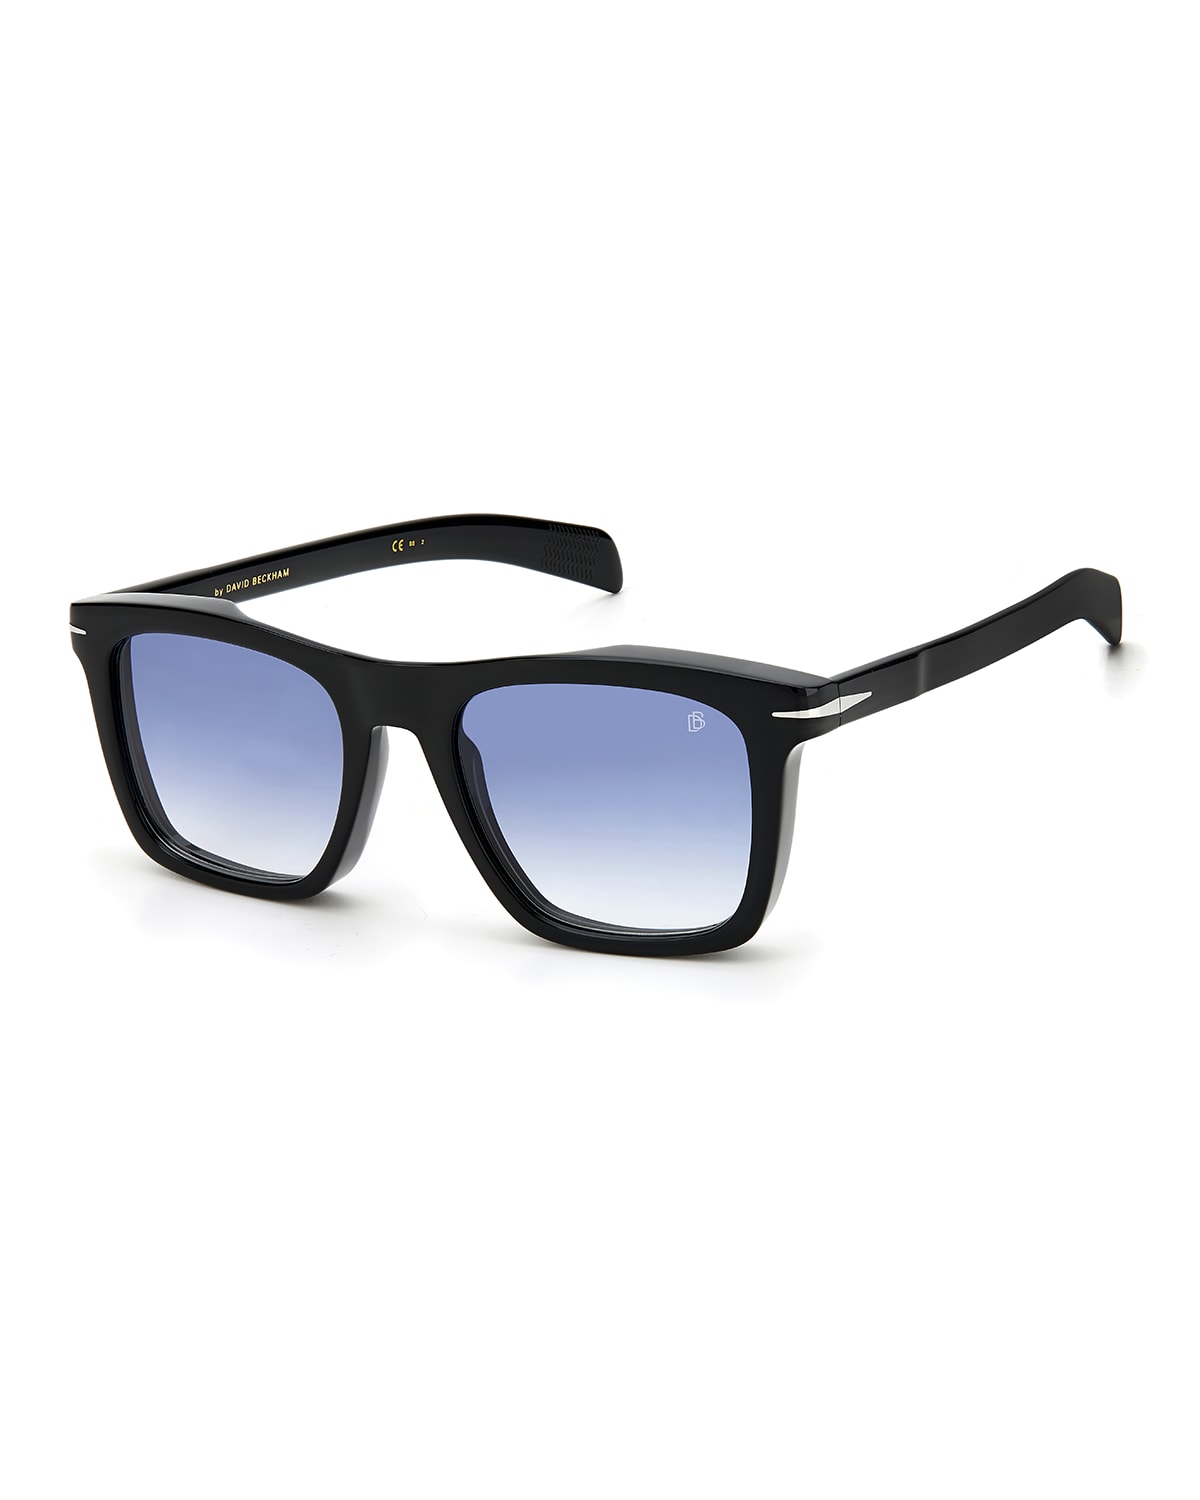 David Beckham Men's Thick Square Acetate Sunglasses